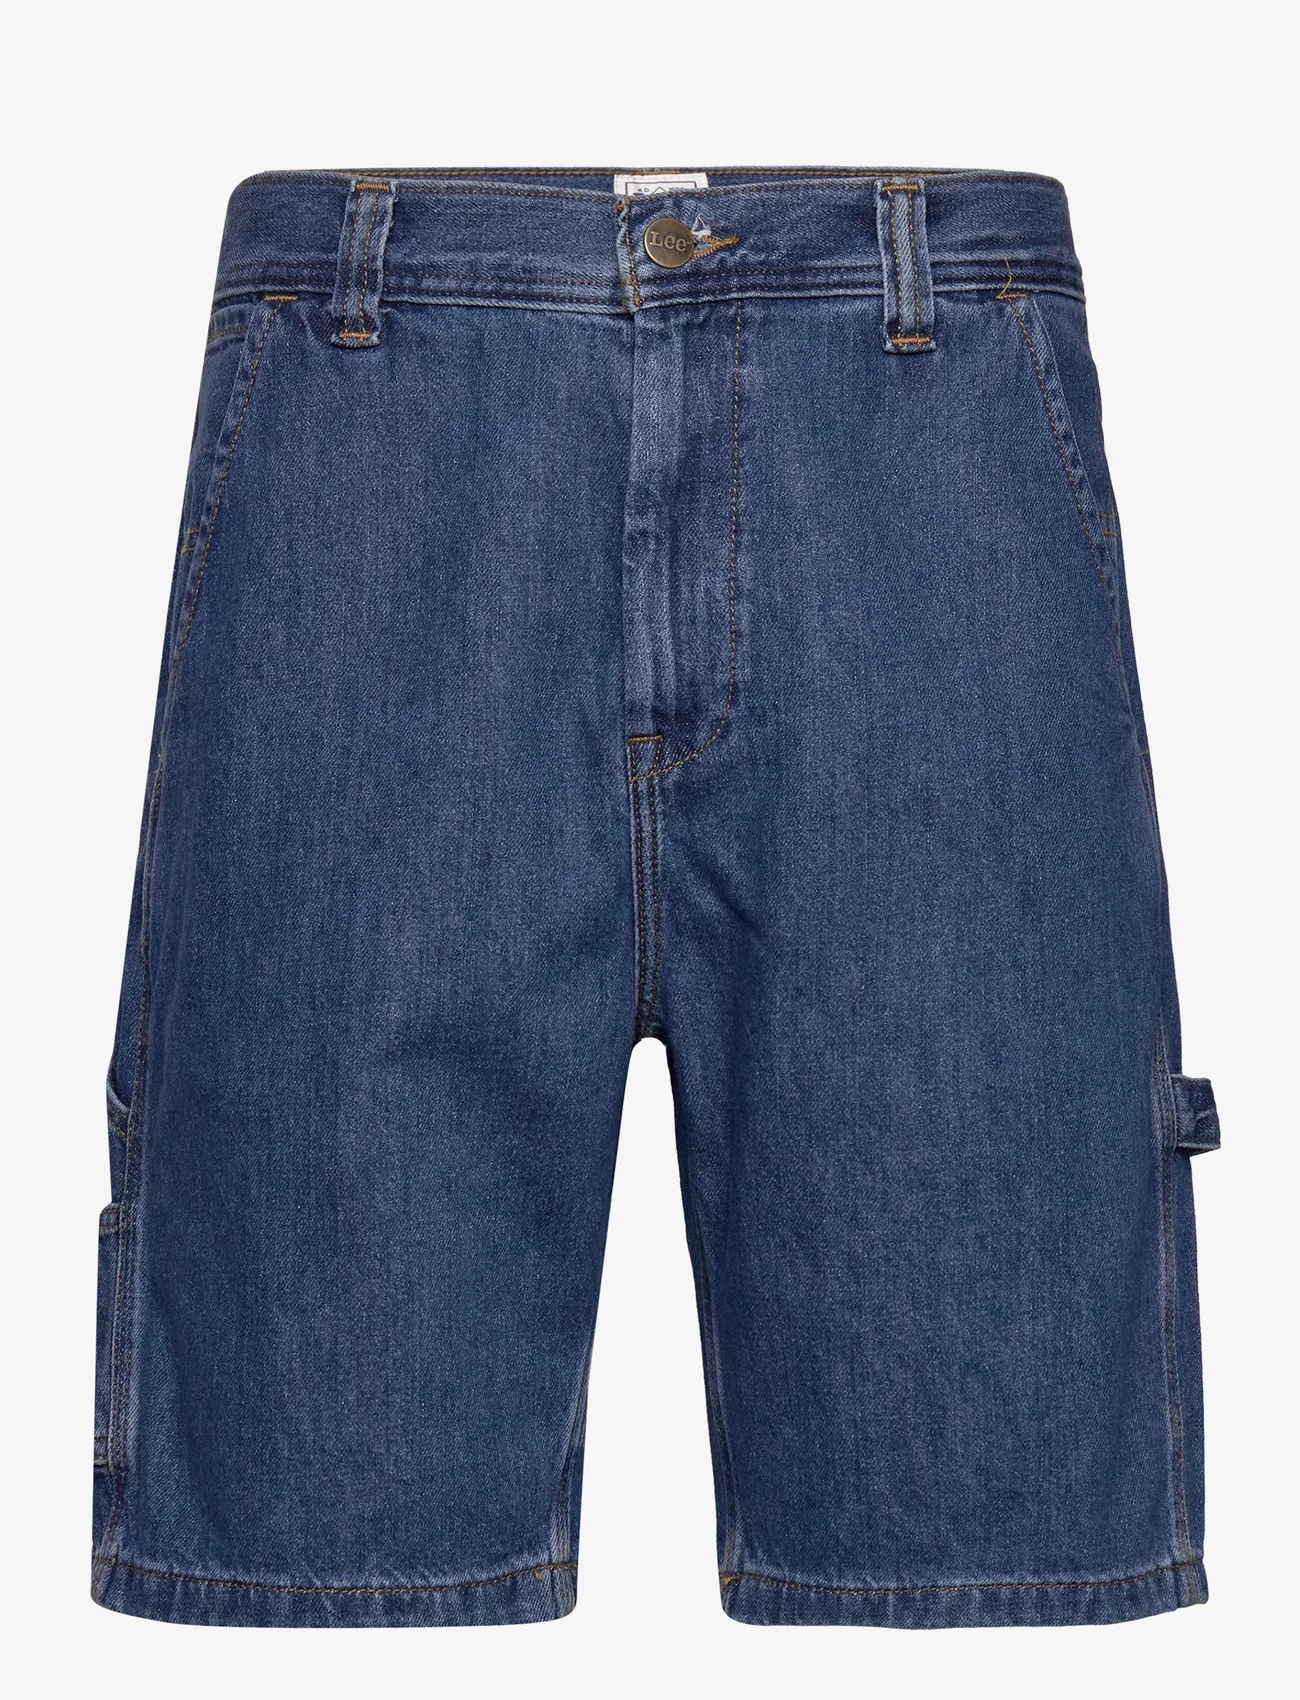 Lee Jeans - CARPENTER SHORT - lühikesed teksapüksid - mid shade - 0